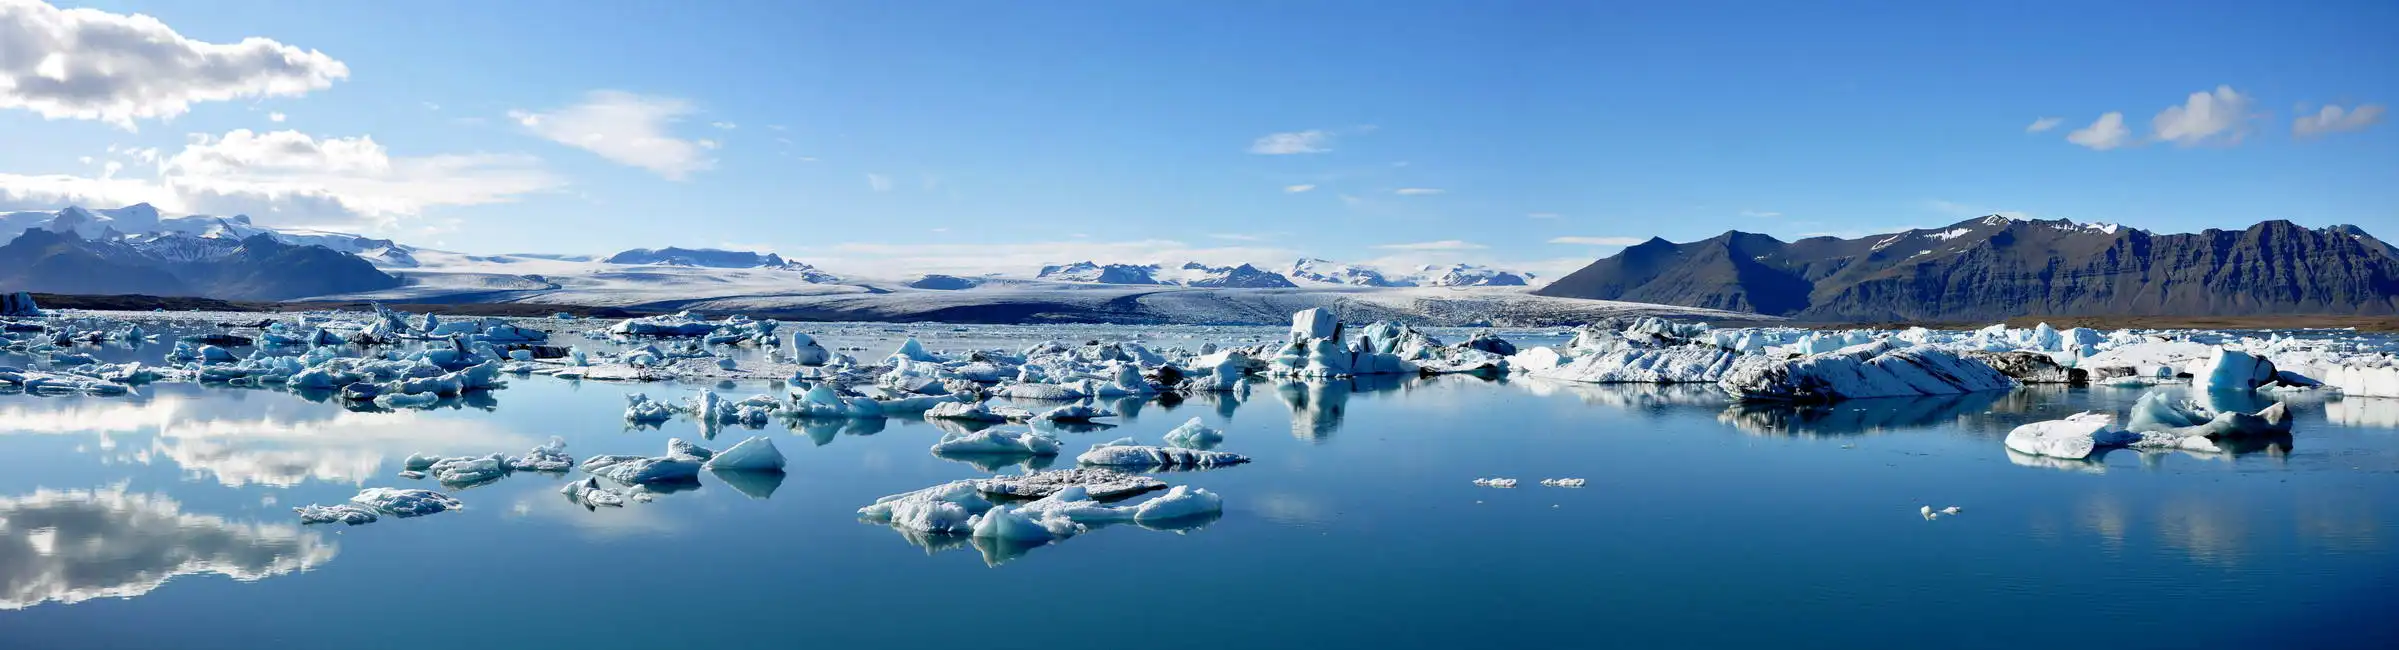 Neznámý: Panoramatický pohled na ledovcové jezero Jokulsarlon